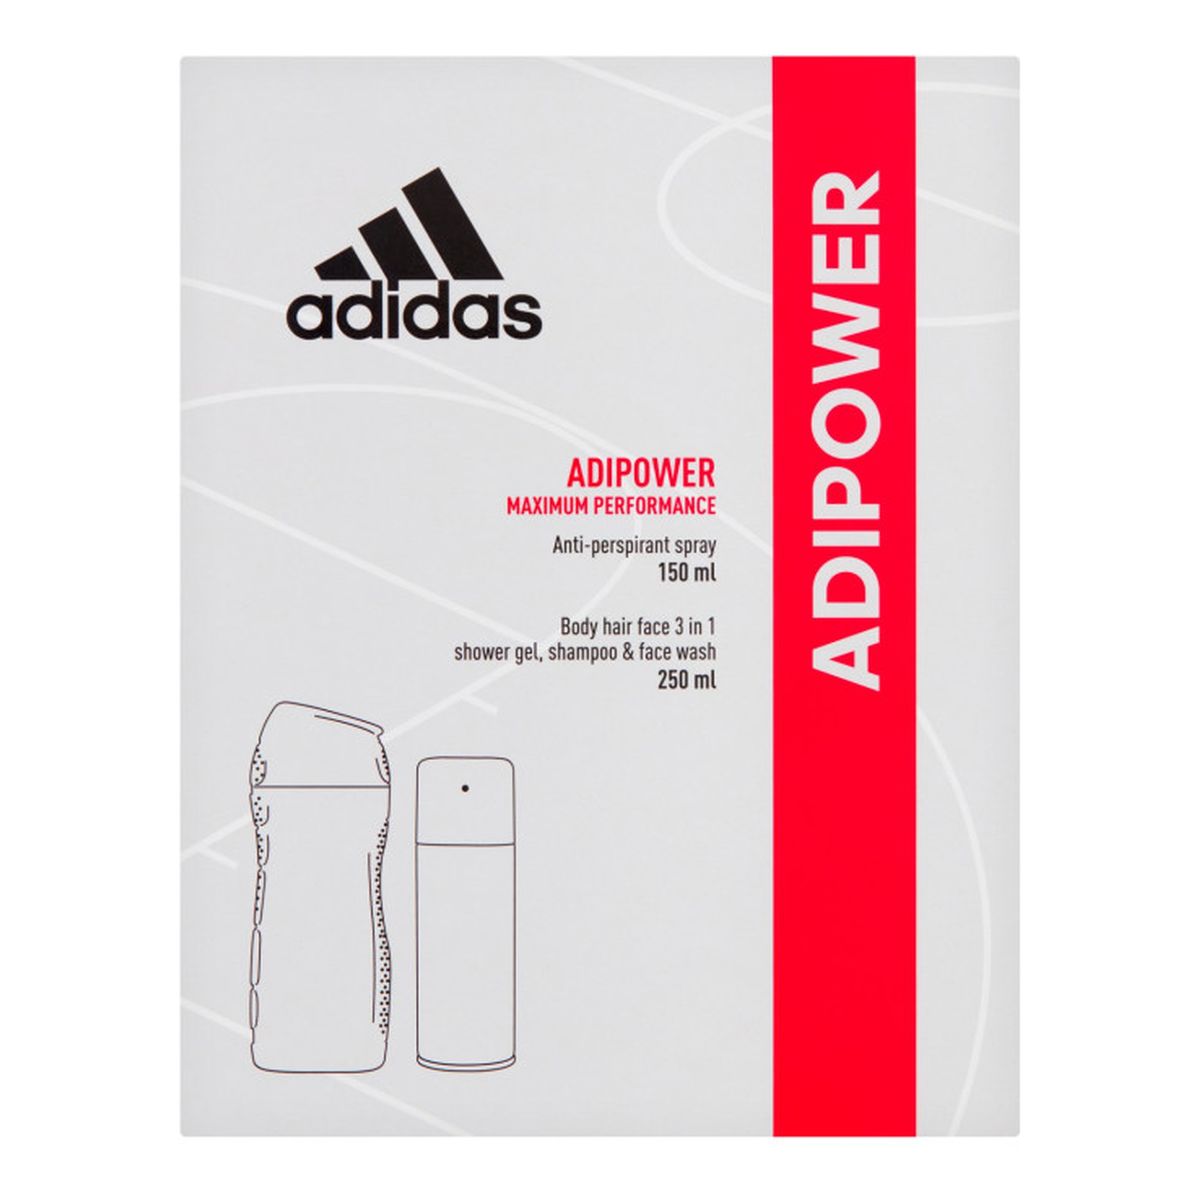 Adidas Adipower Men Zestaw prezentowy (dezodorant 150ml+żel pod prysznic 3in1 250ml)